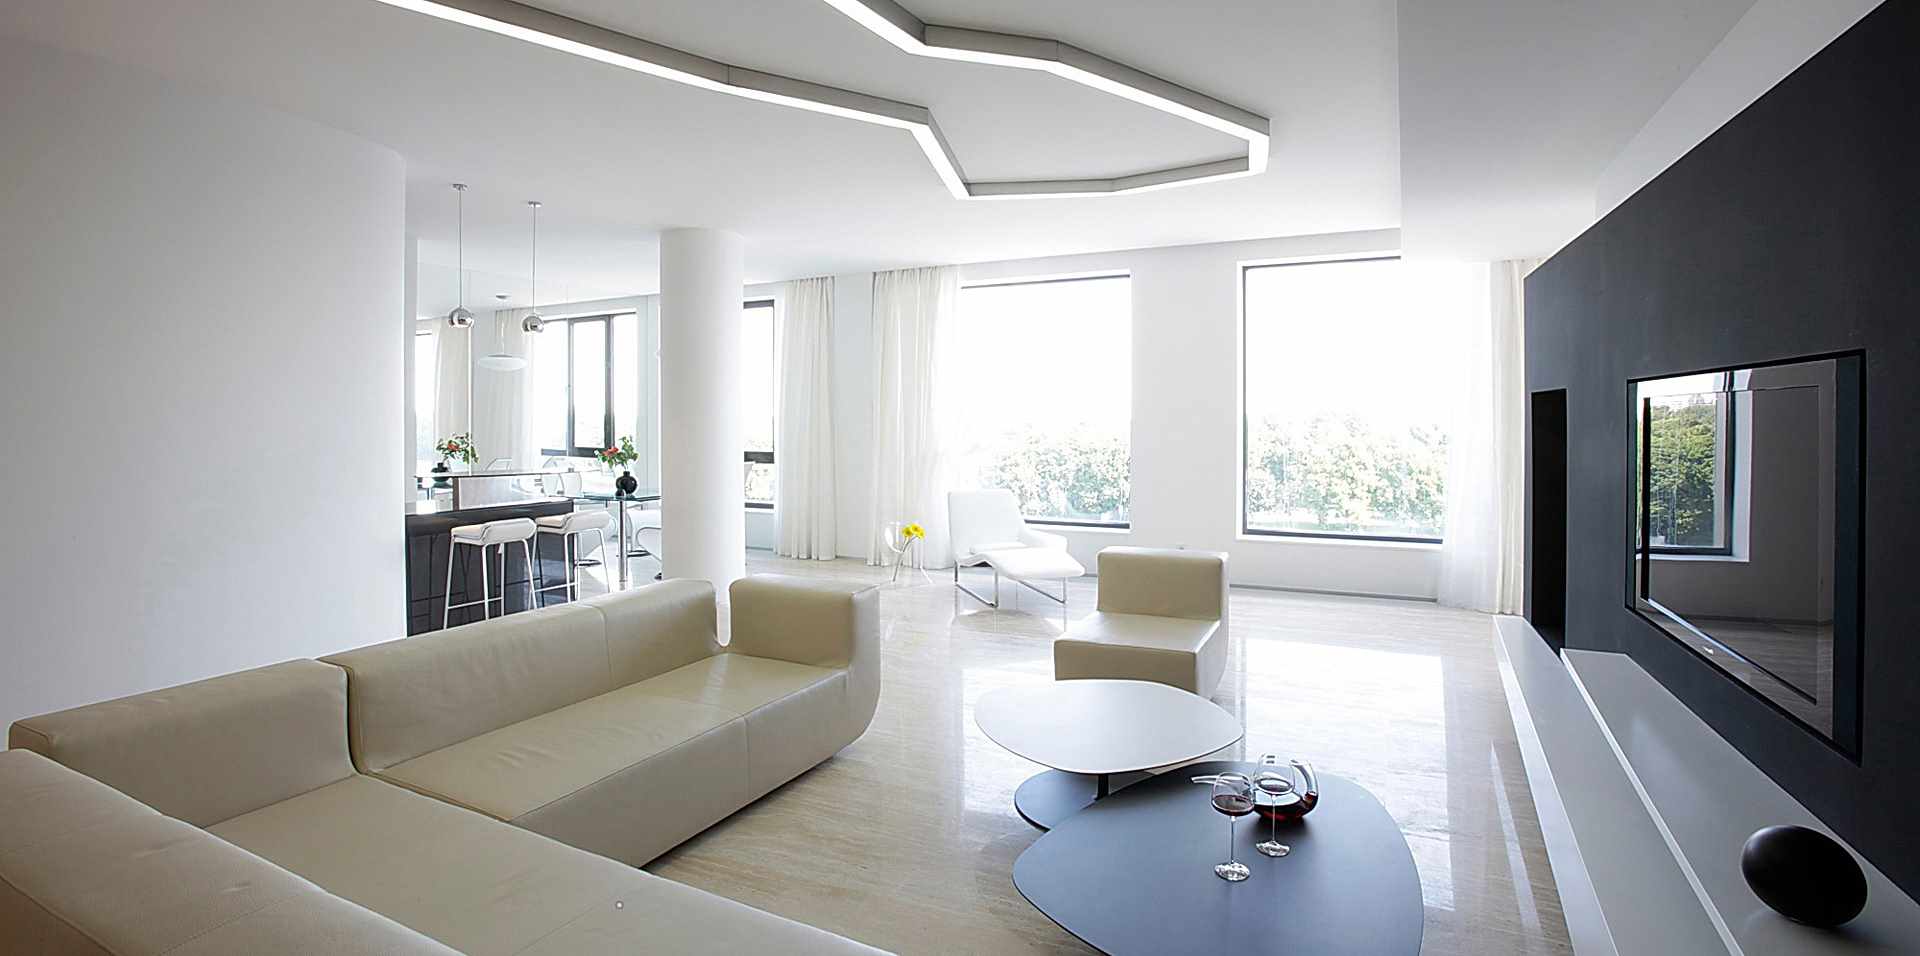 ett exempel på att applicera en ljus inredning i ett vardagsrum i stil med minimalism